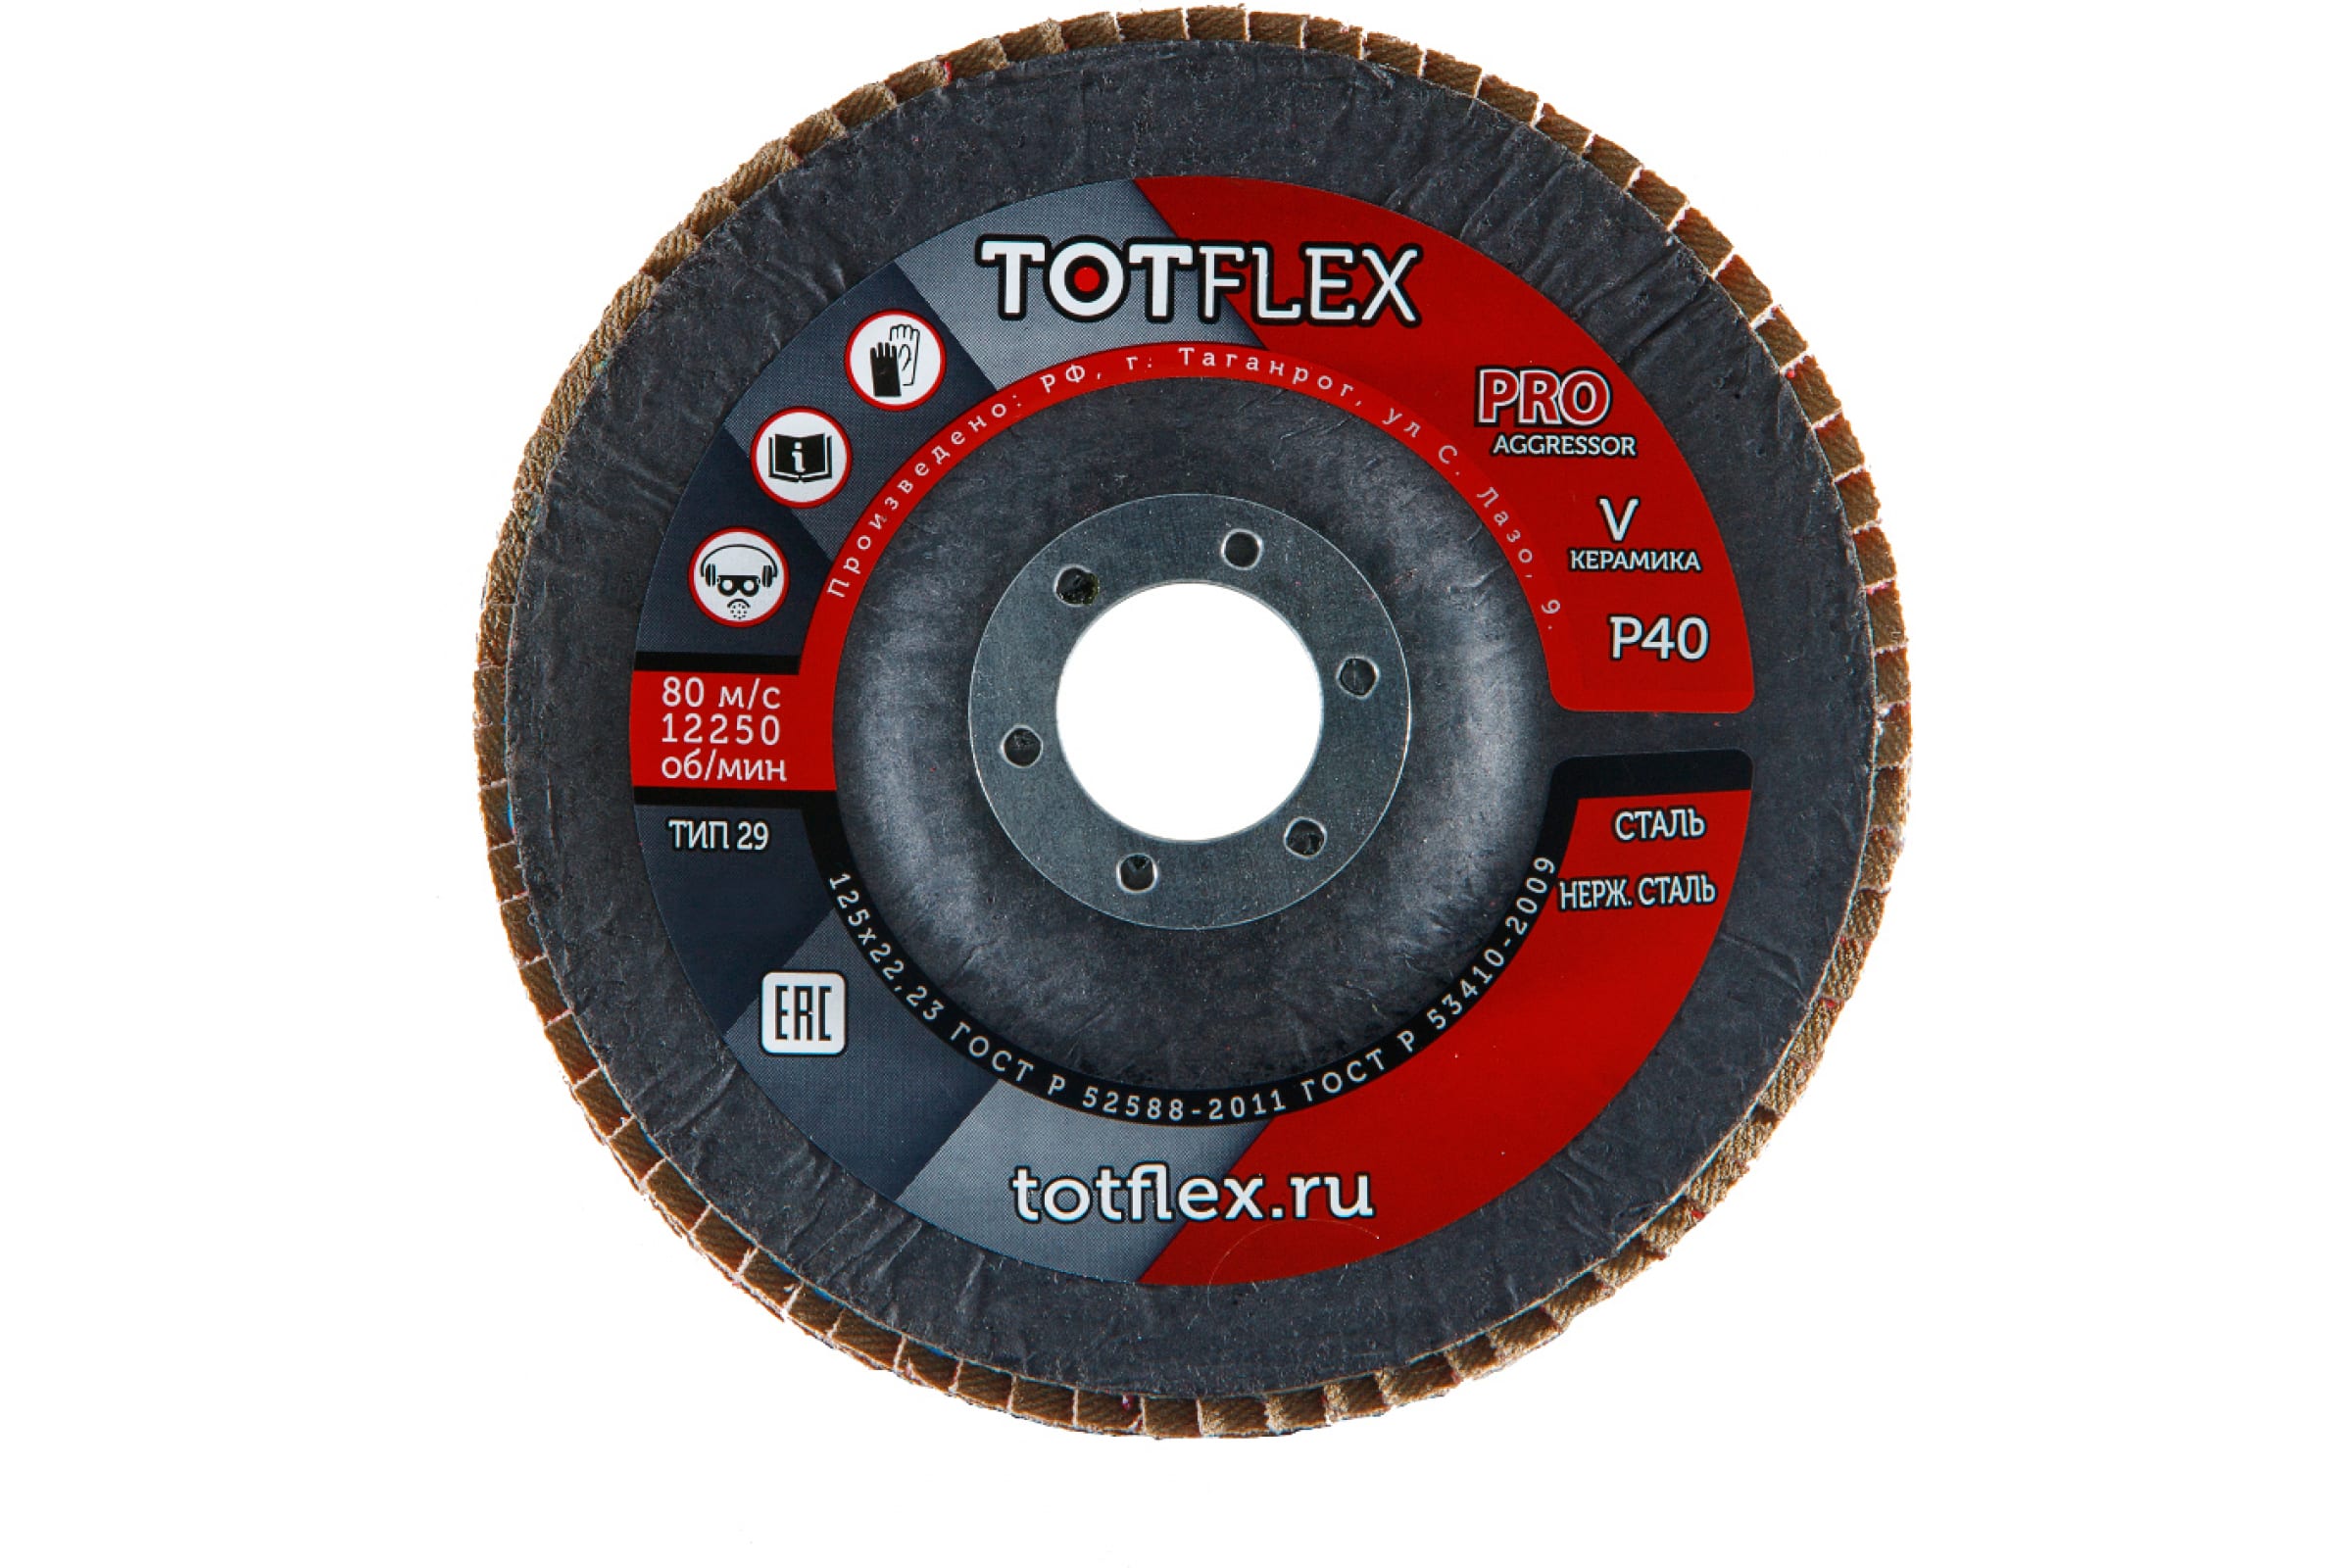 Totflex Круг лепестковый торцевой AGGRESSOR-PRO 2 125x22 V P40 4631148128248